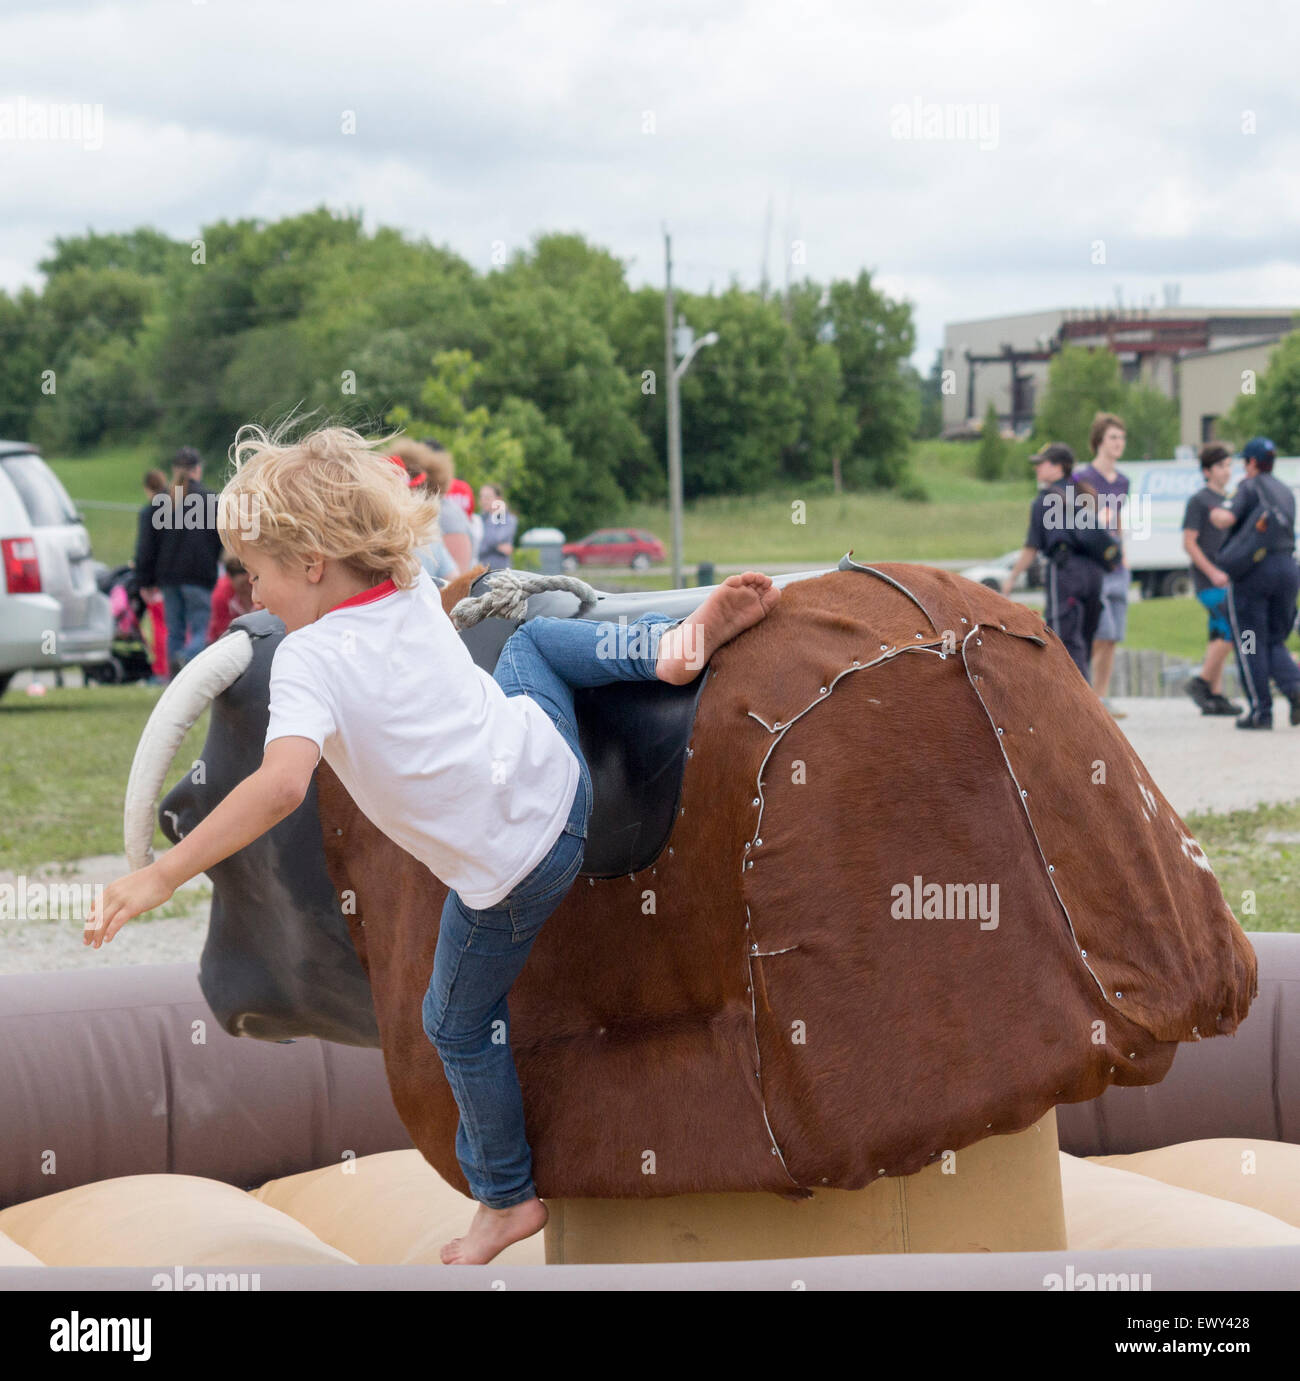 Jeune garçon est jeté d'un taureau mécanique lors de la fête du Canada à Cannington, Ontario Banque D'Images